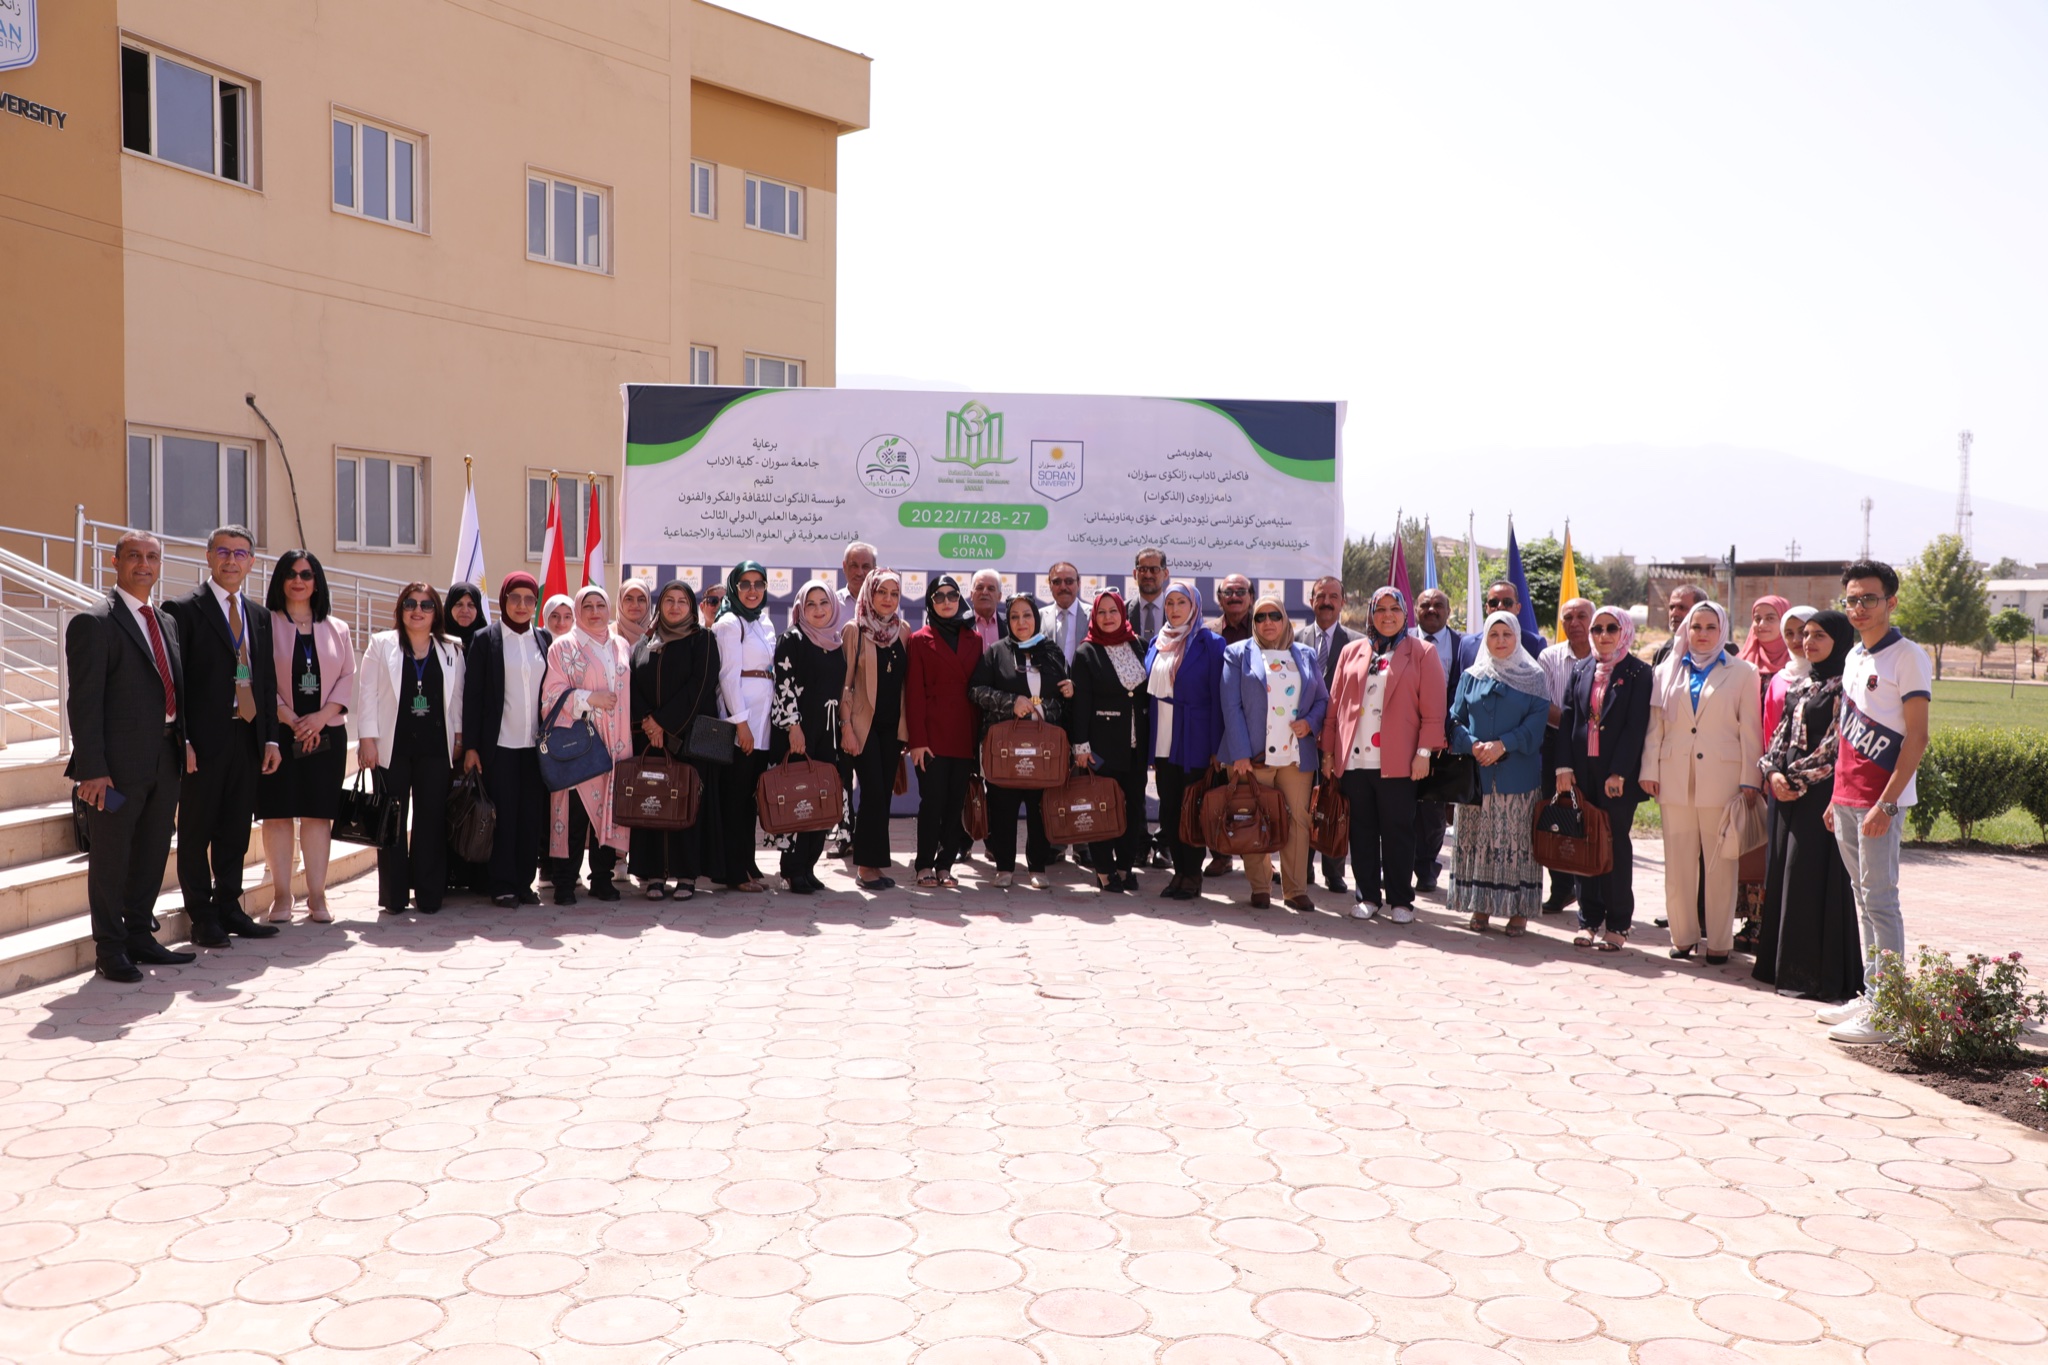 عقد مؤتمر مشترك بين جامعة سوران ومؤسسة الذكوات